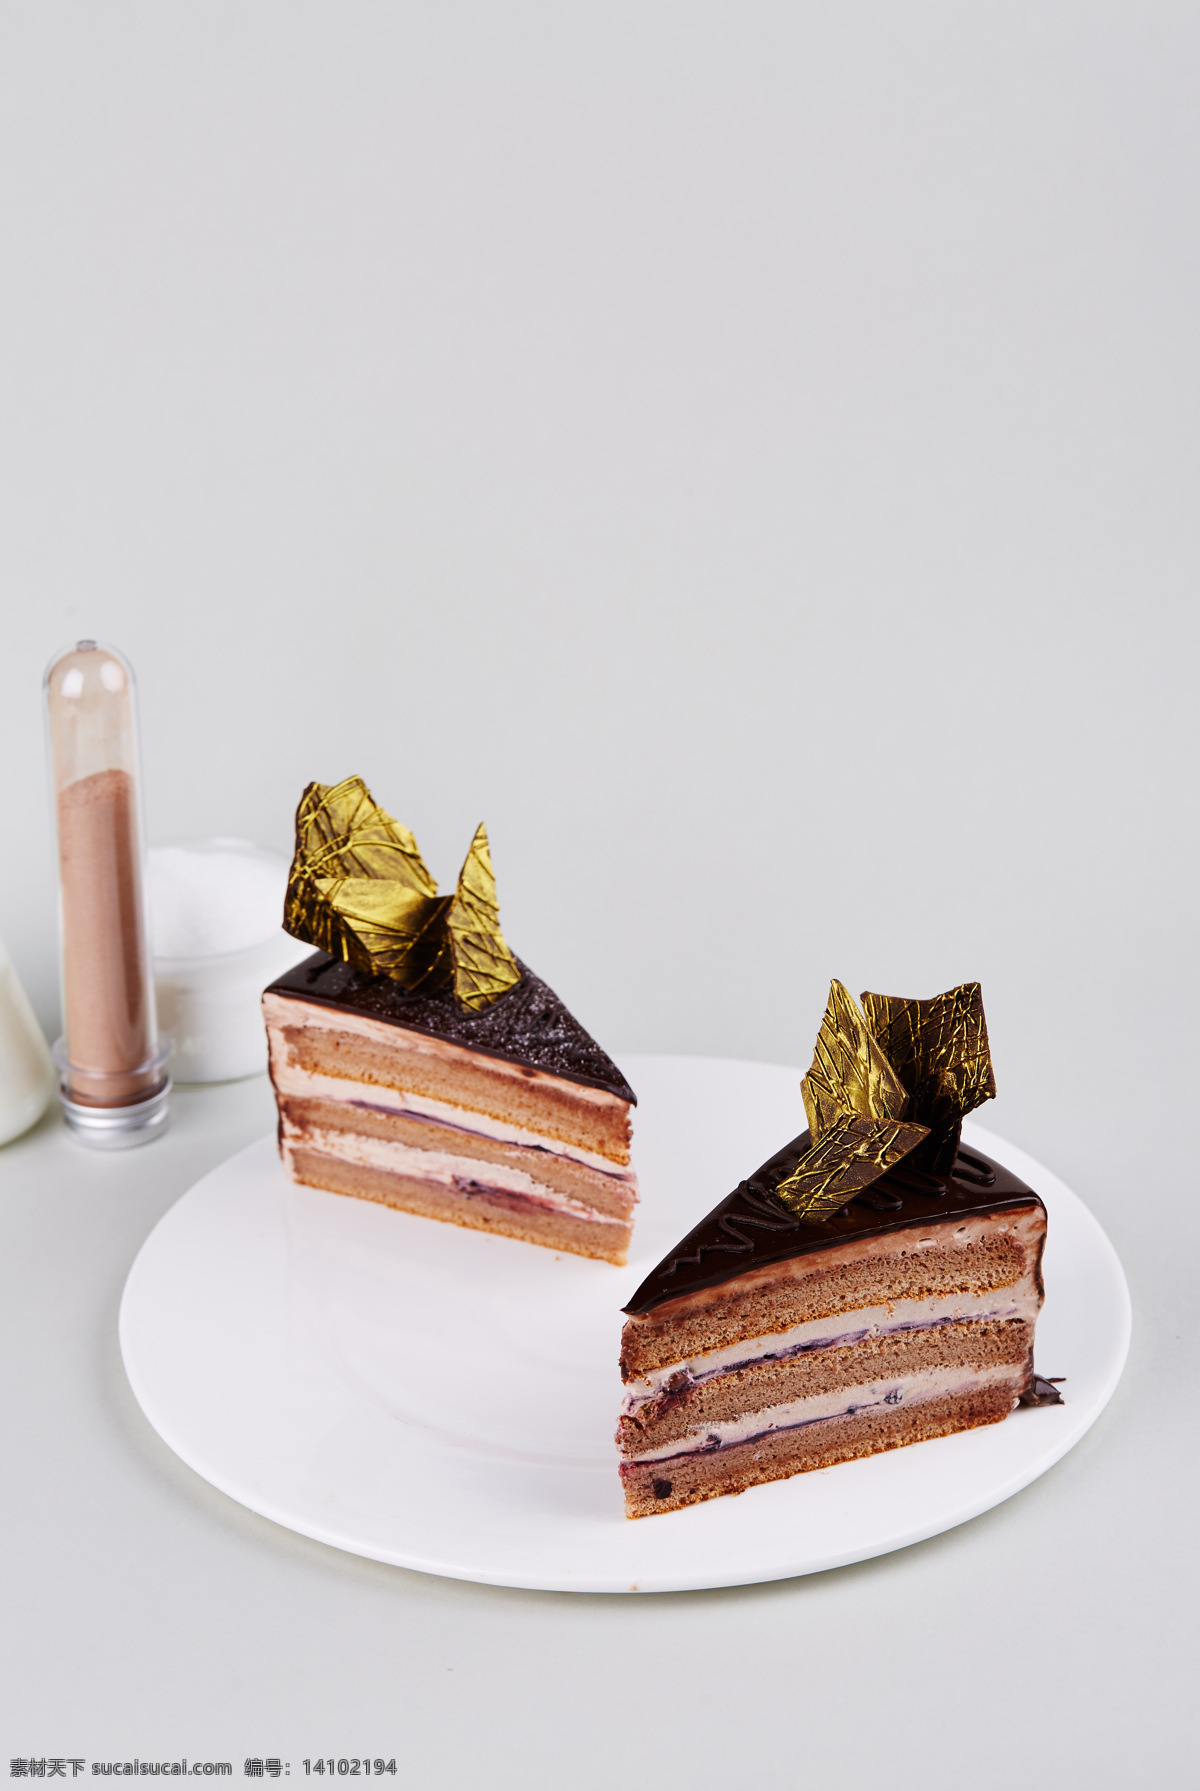 巧克力 慕 斯 巧克力慕斯 蛋糕 甜点 糕点 慕斯 慕斯蛋糕 巧克力蛋糕 日式点心 奶油蛋糕 夹心蛋糕 千层蛋糕 餐饮美食 传统美食